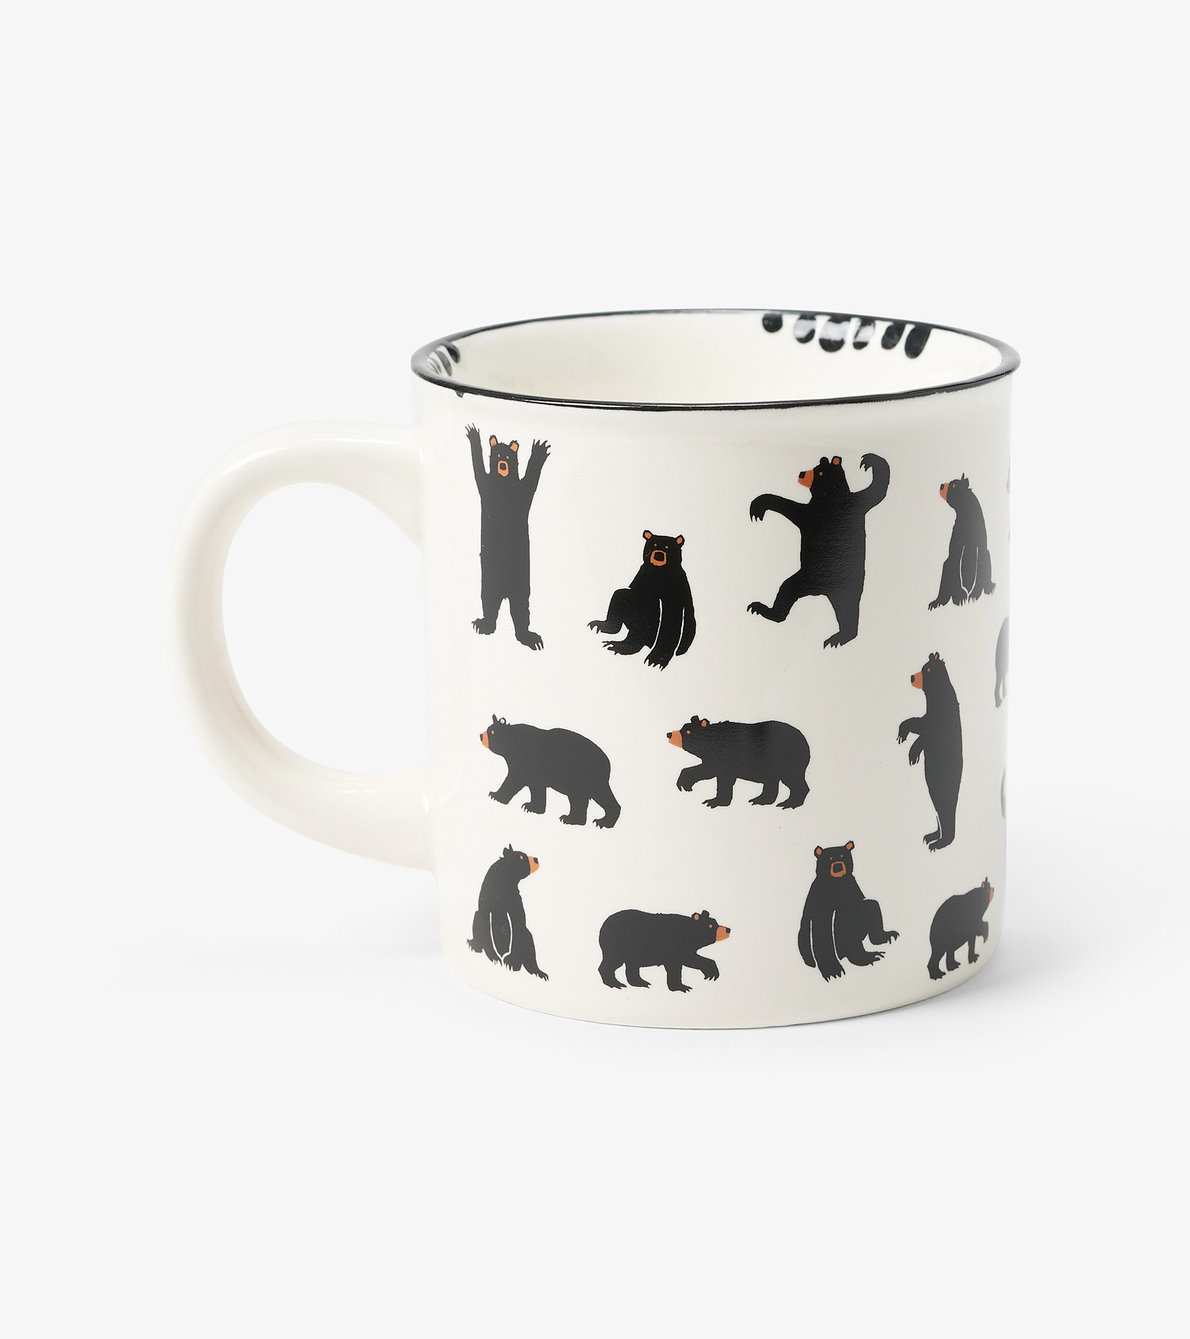 View larger image of Black Bears Ceramic Camping Mug